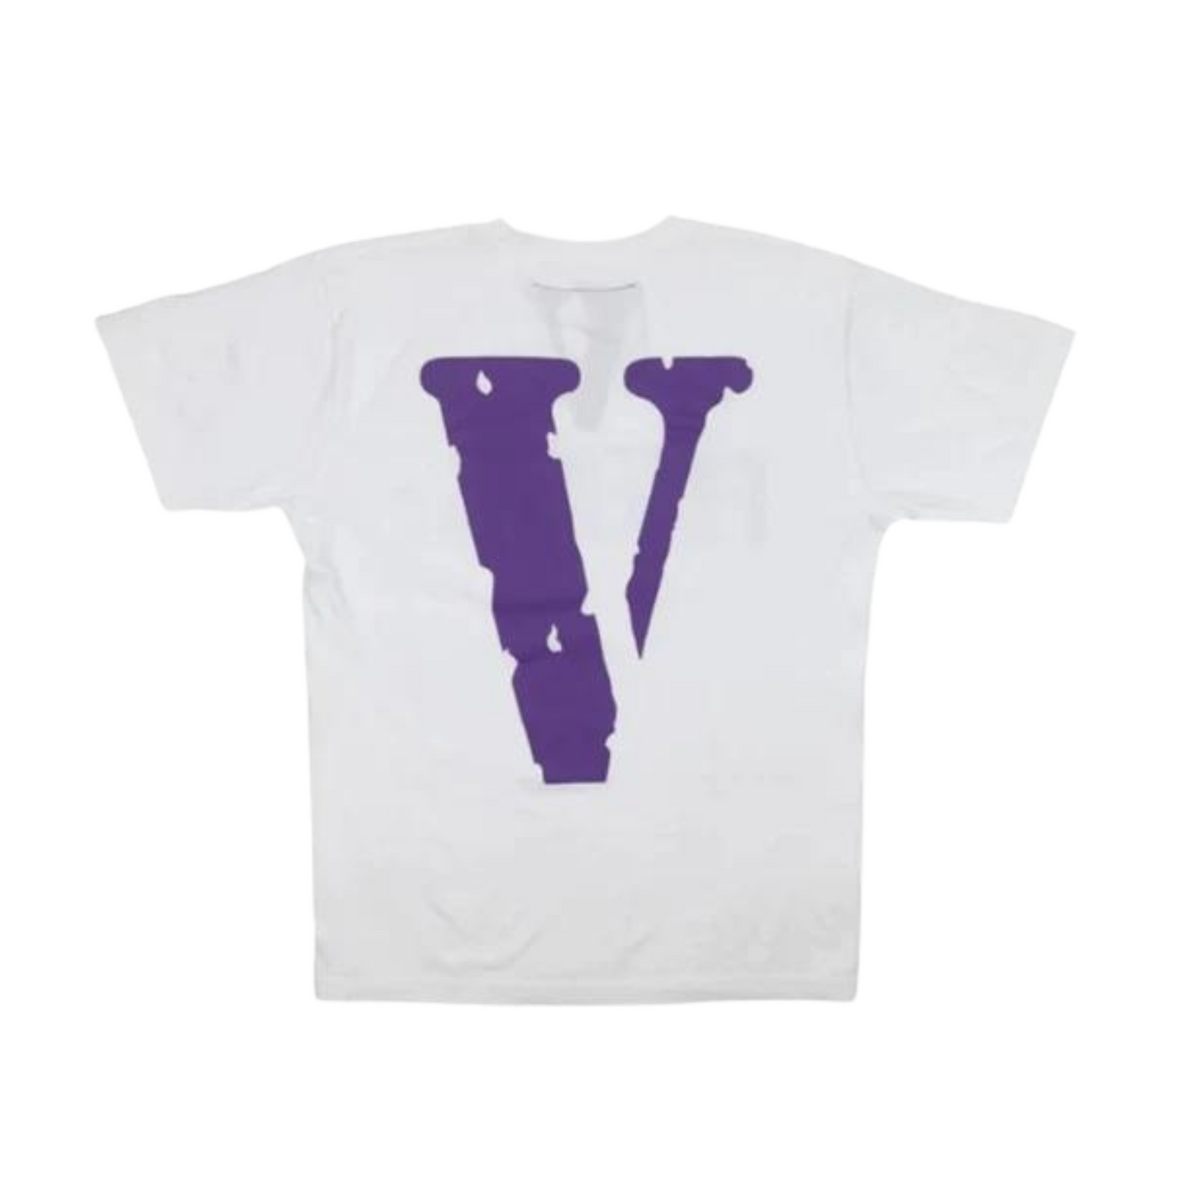 Vlone Staple T-shirt "White/Purple"